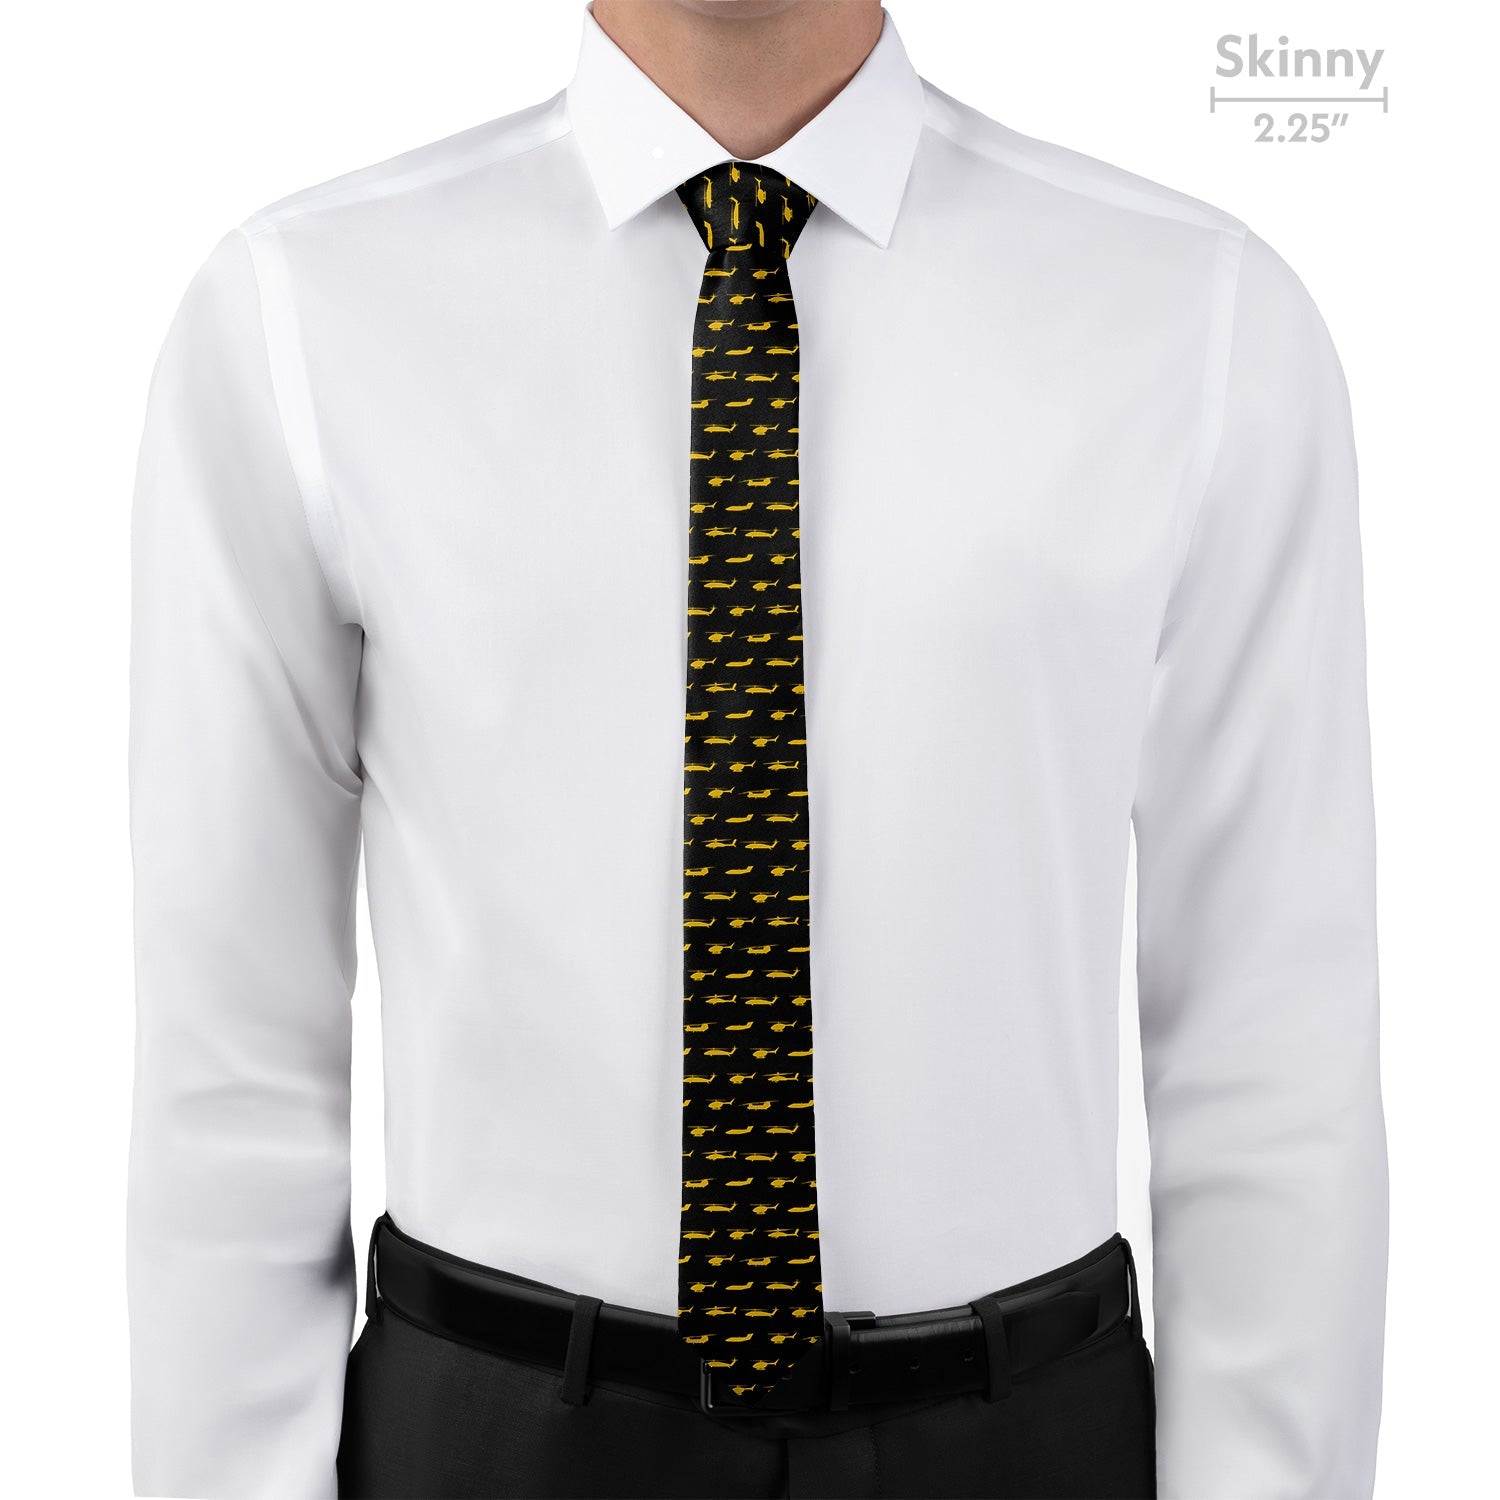 Army Aviation Necktie - Skinny - Knotty Tie Co.